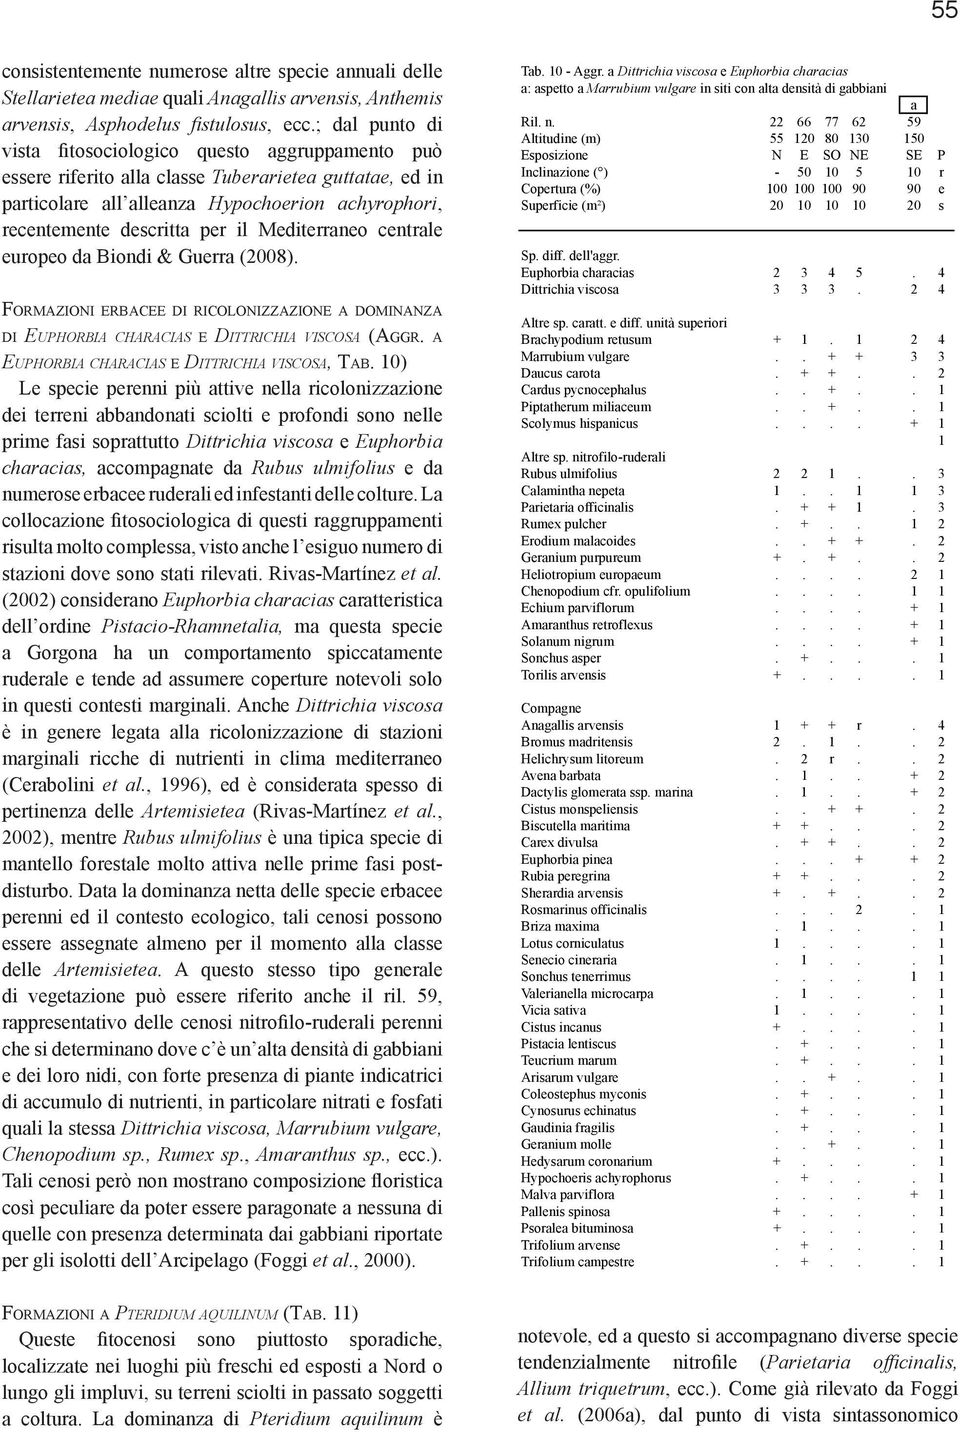 Mediterraneo centrale europeo da Biondi & Guerra (2008). Formazioni erbacee di ricolonizzazione a dominanza di Euphorbia characias e Dittrichia viscosa (Aggr.